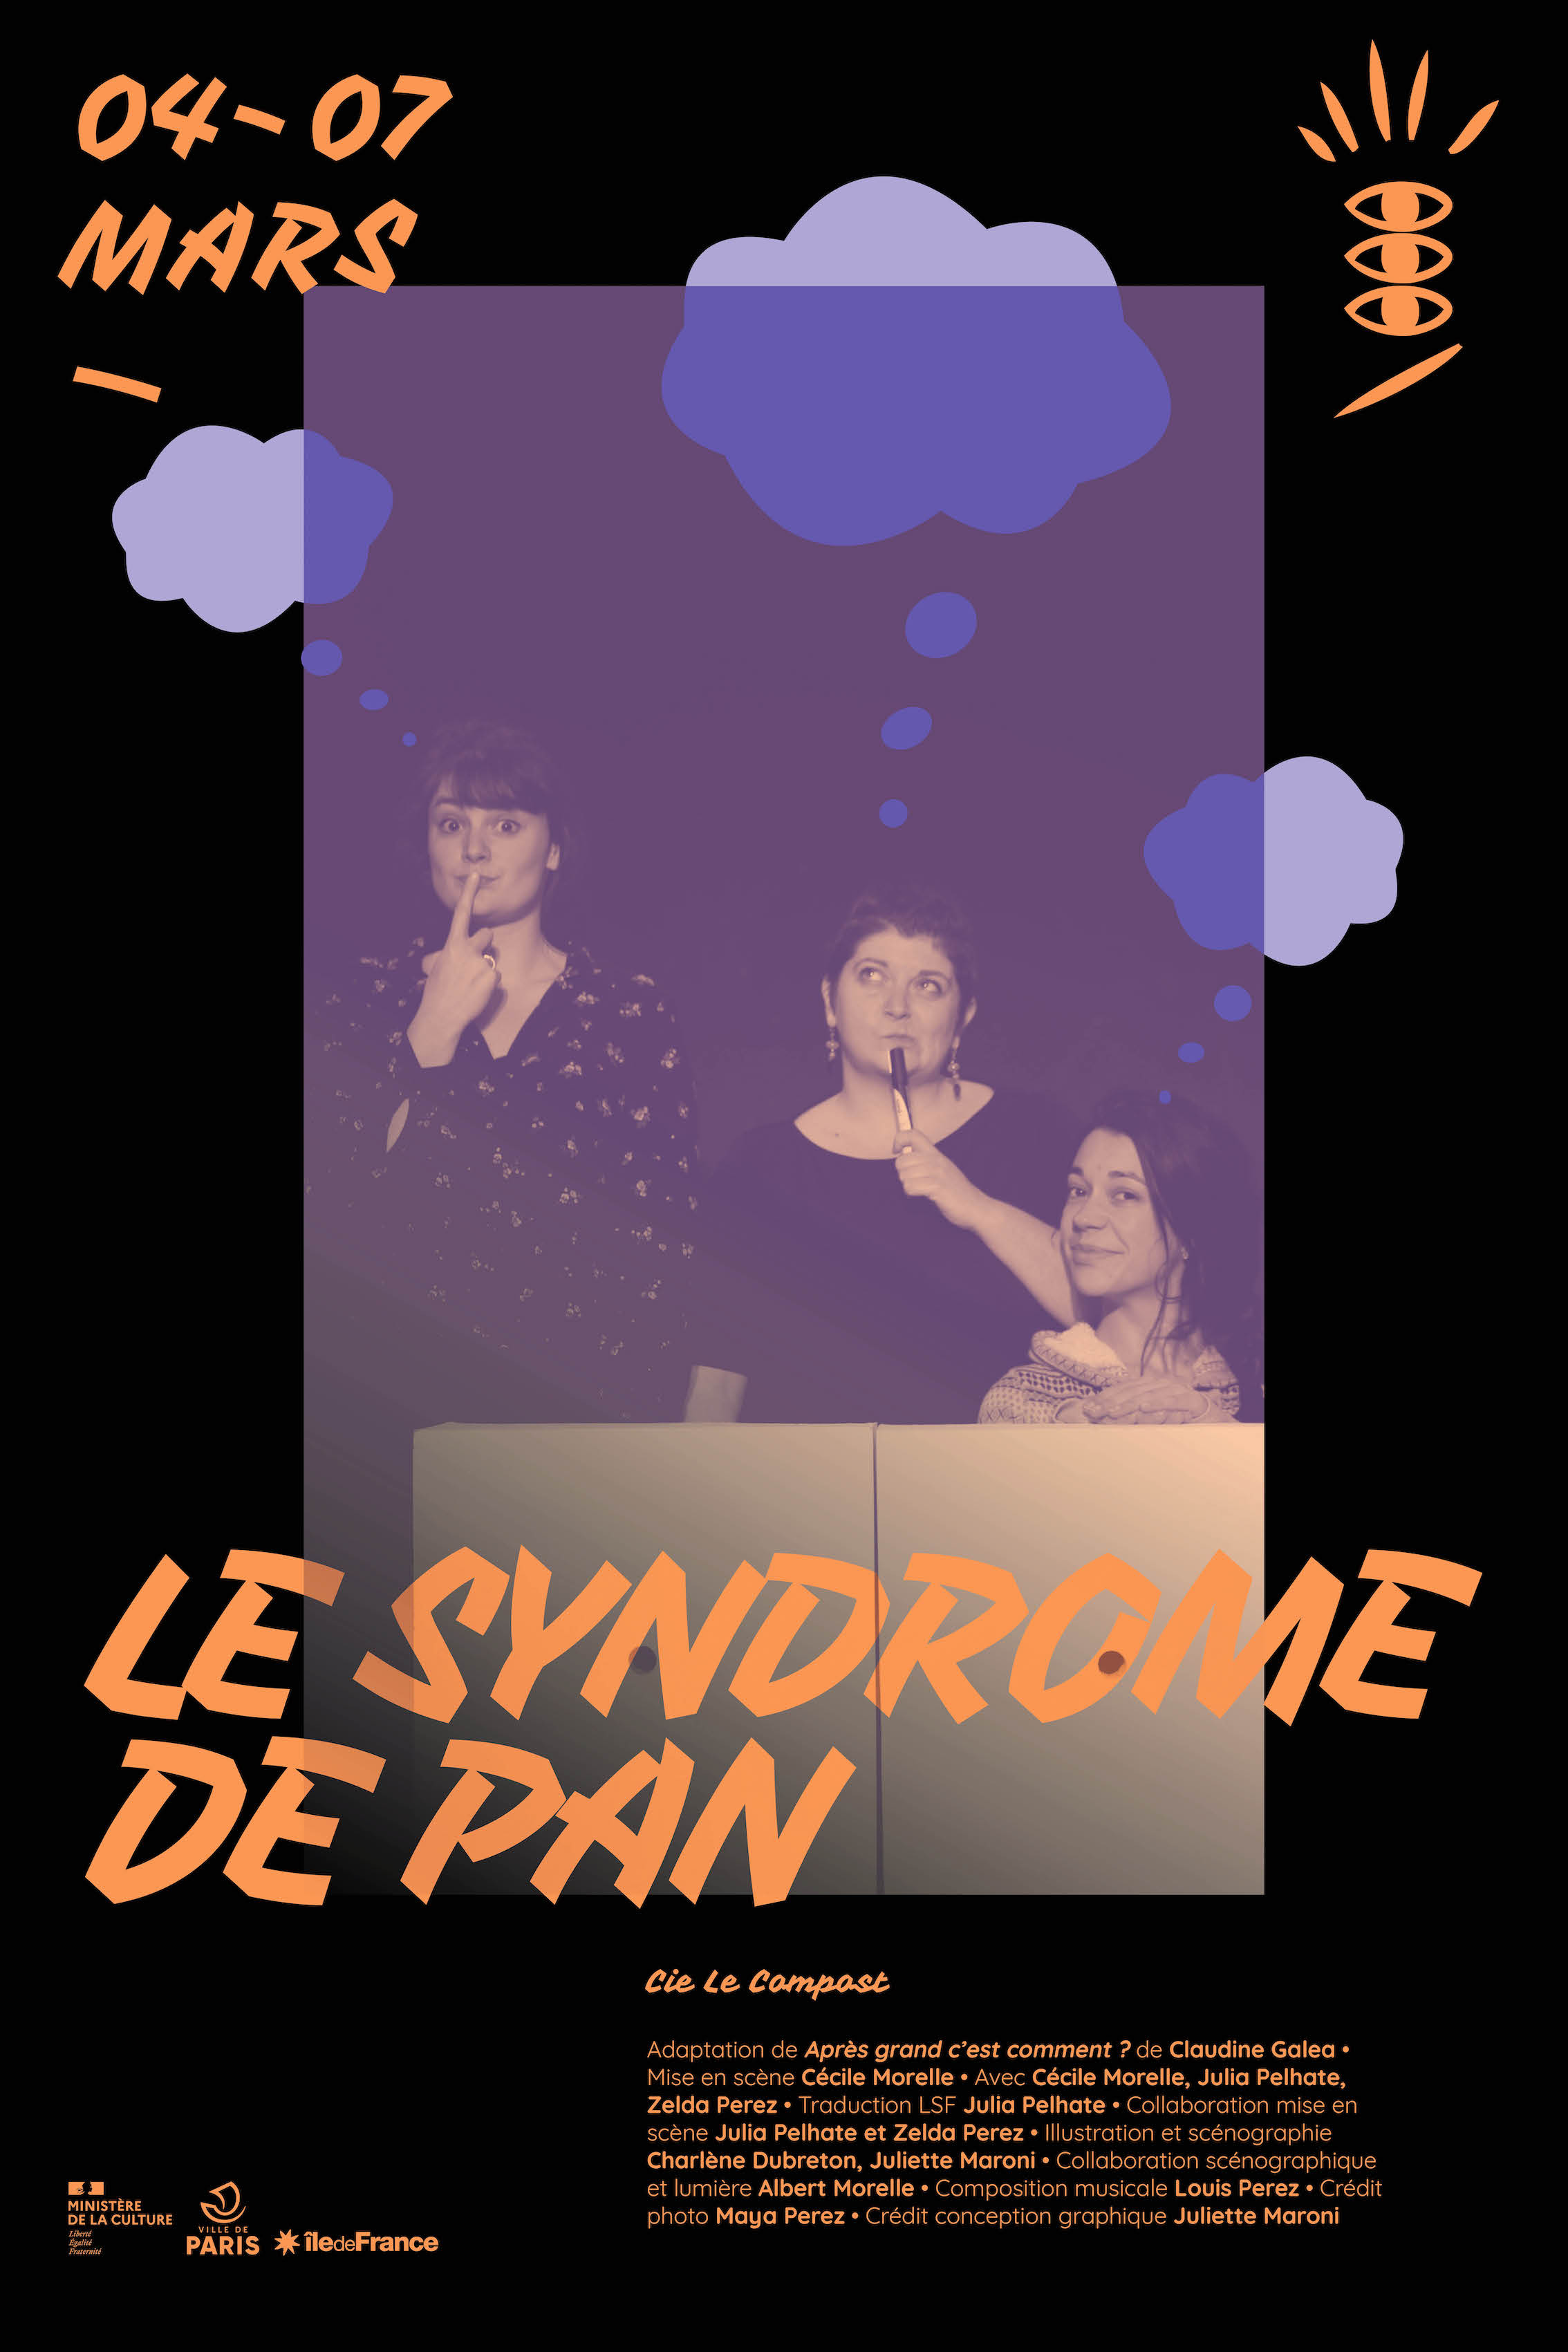 Le syndrome de Pan